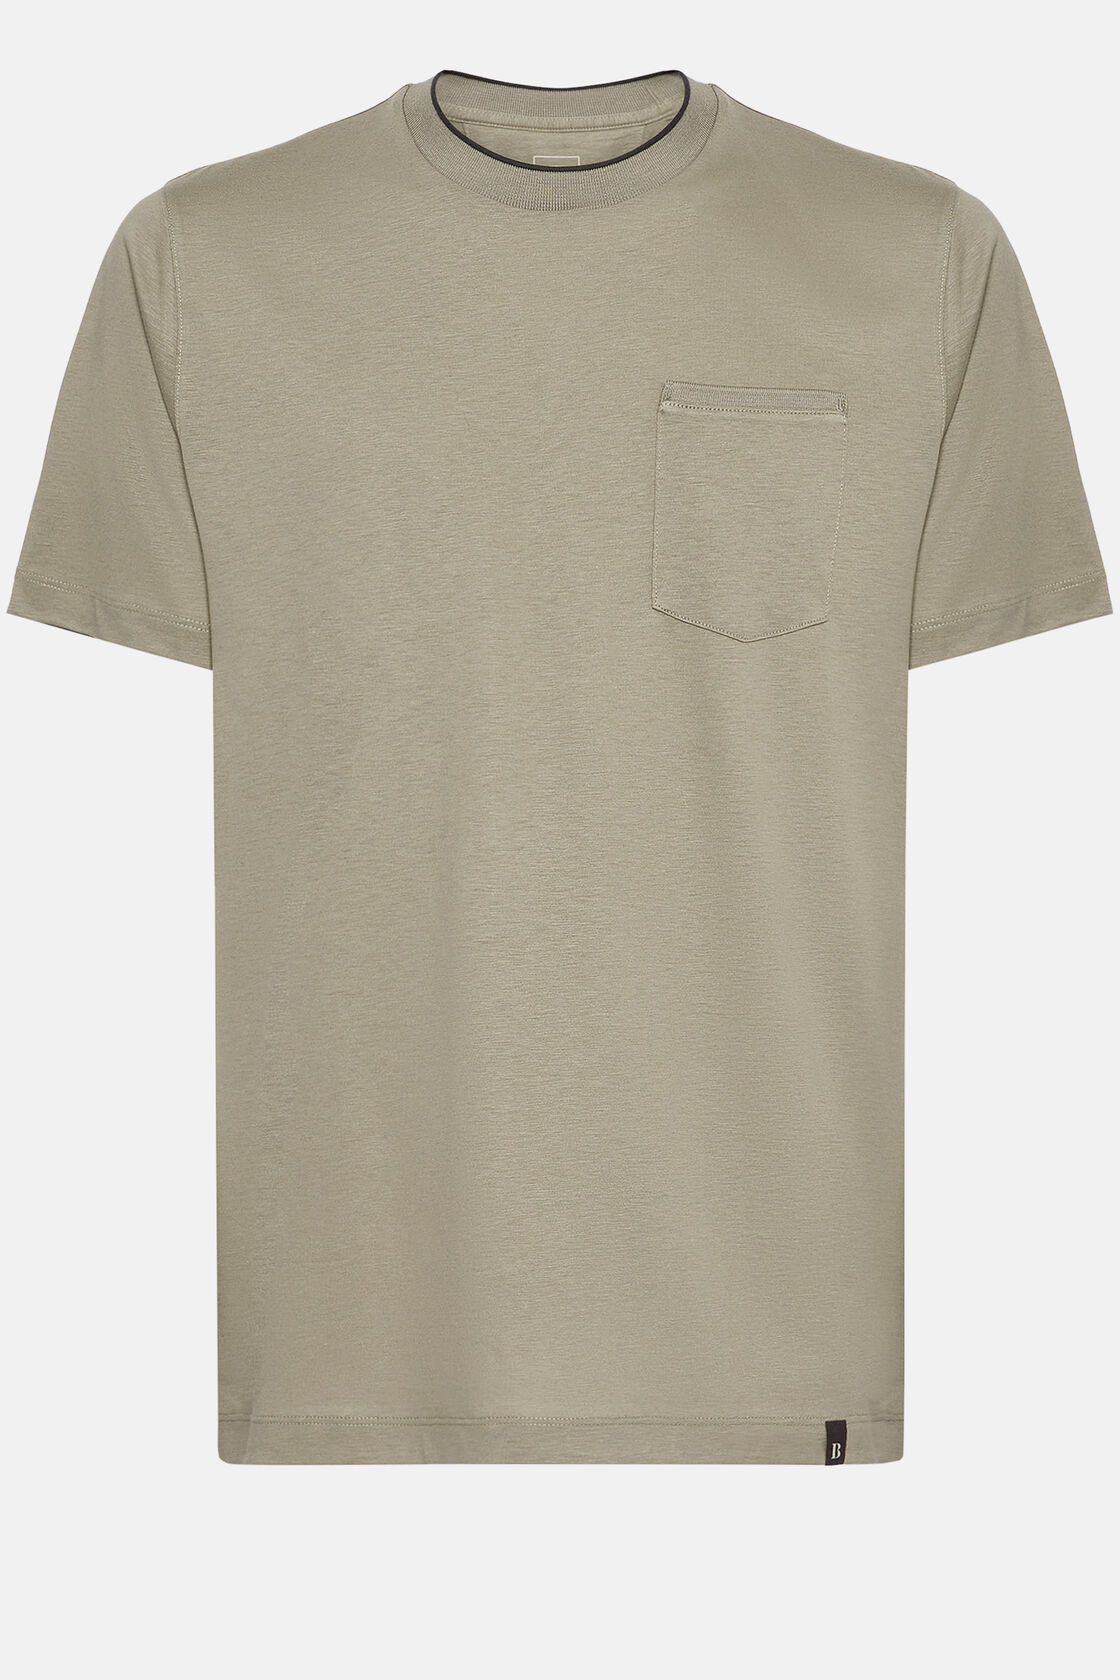 Κοντομάνικο μπλουζάκι από βαμβάκι και ζέρσεϊ tencel, Taupe, hi-res